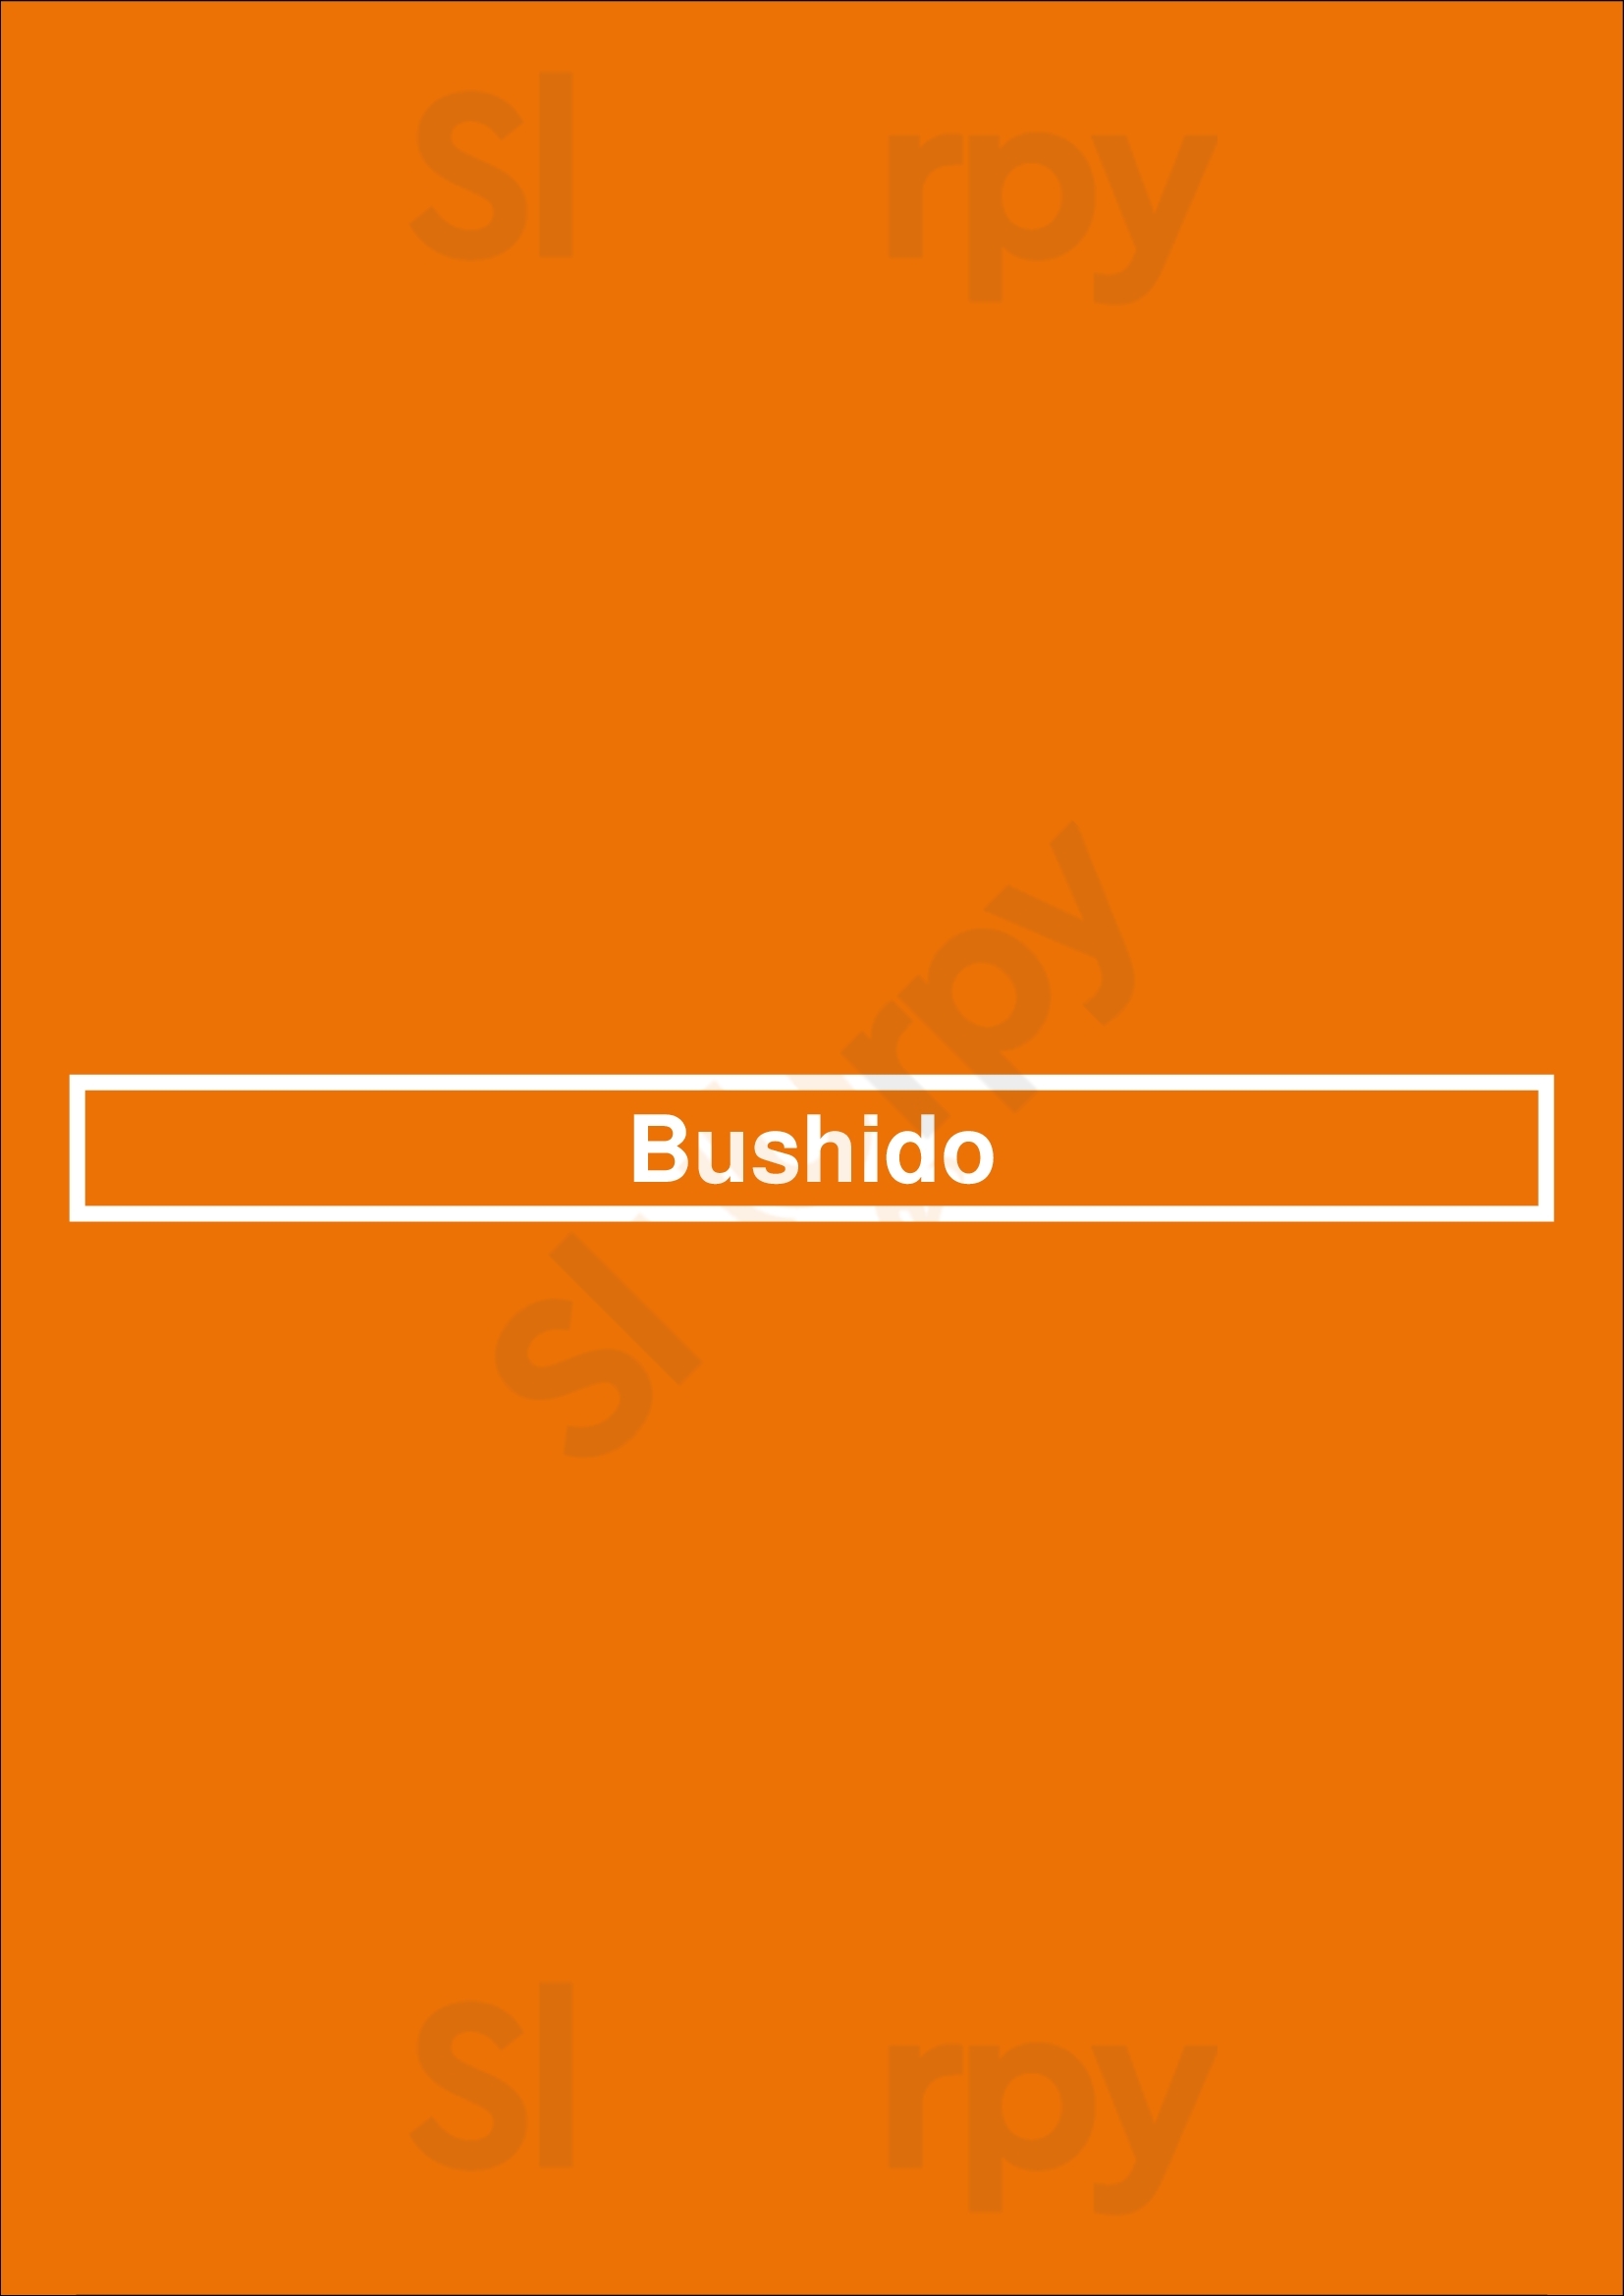 Bushido Matosinhos Menu - 1